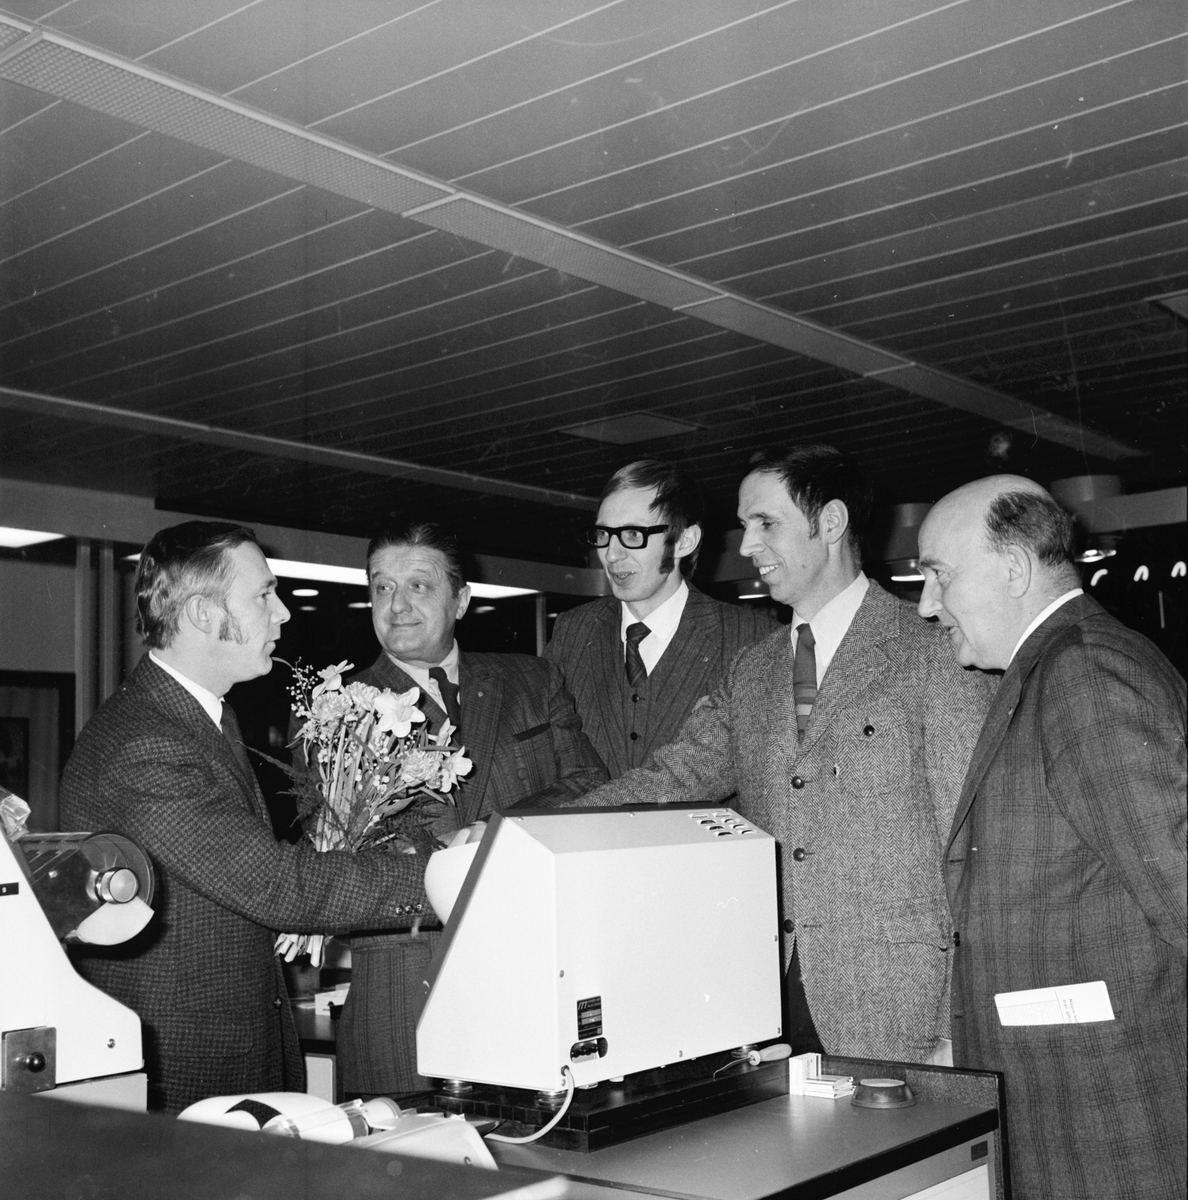 Lions Arbrå på besök hos sparbanken.
Juni 1972